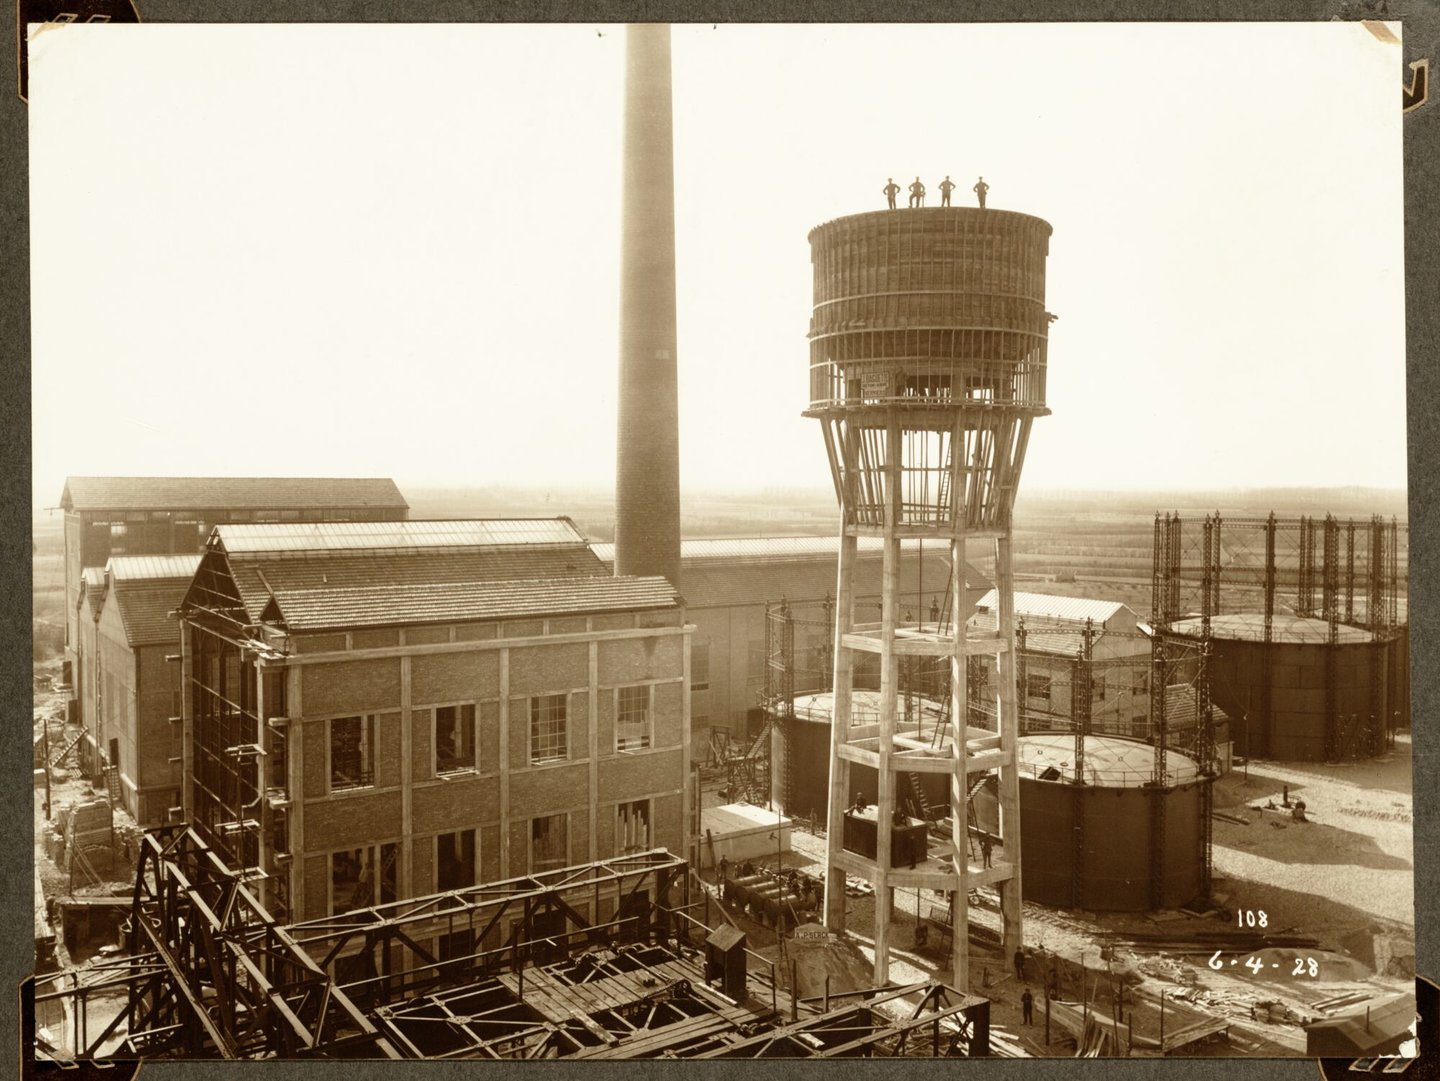 Bouw van generatorengebouw, schoorsteen, gashouders en watertoren van ammoniakfabriek van cokesfabriek Kuhlmann in Zelzate